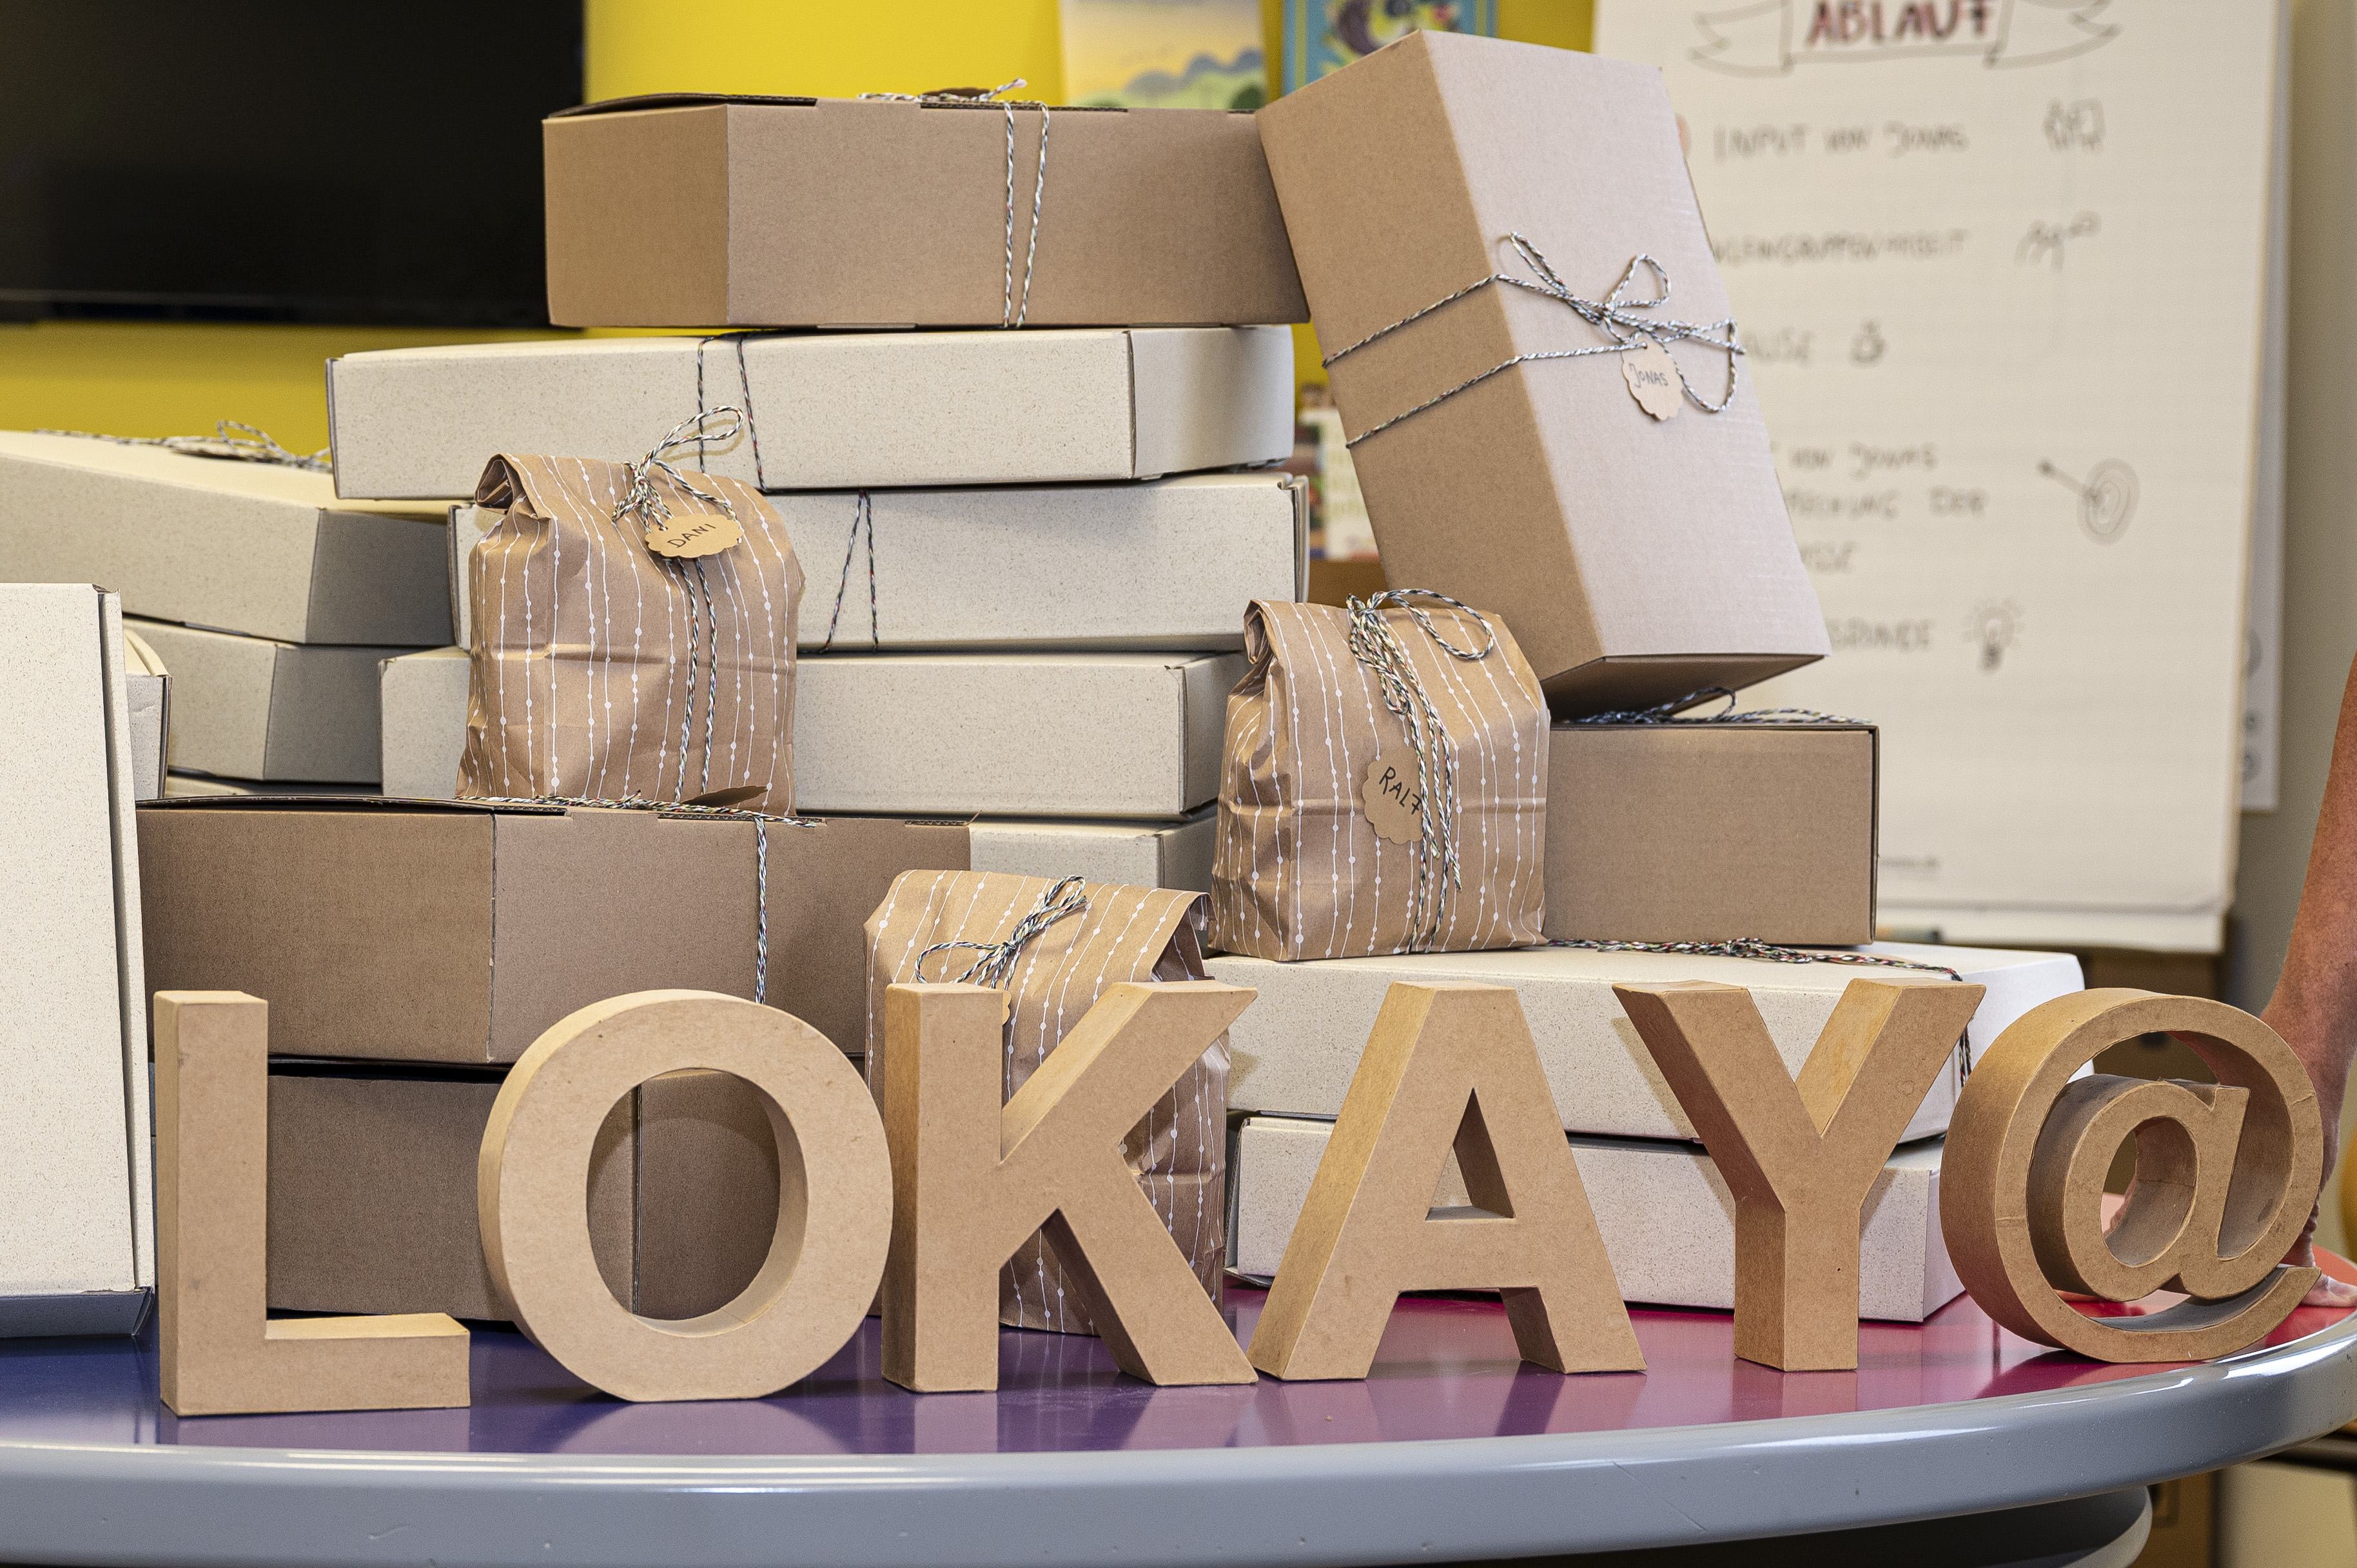 ein Stapel verschieden großer Kartons und Päckchen mit Schleifen. Im Vordergrund stehen Papp-Buchstaben, die das Wort "LOKAY" bilden